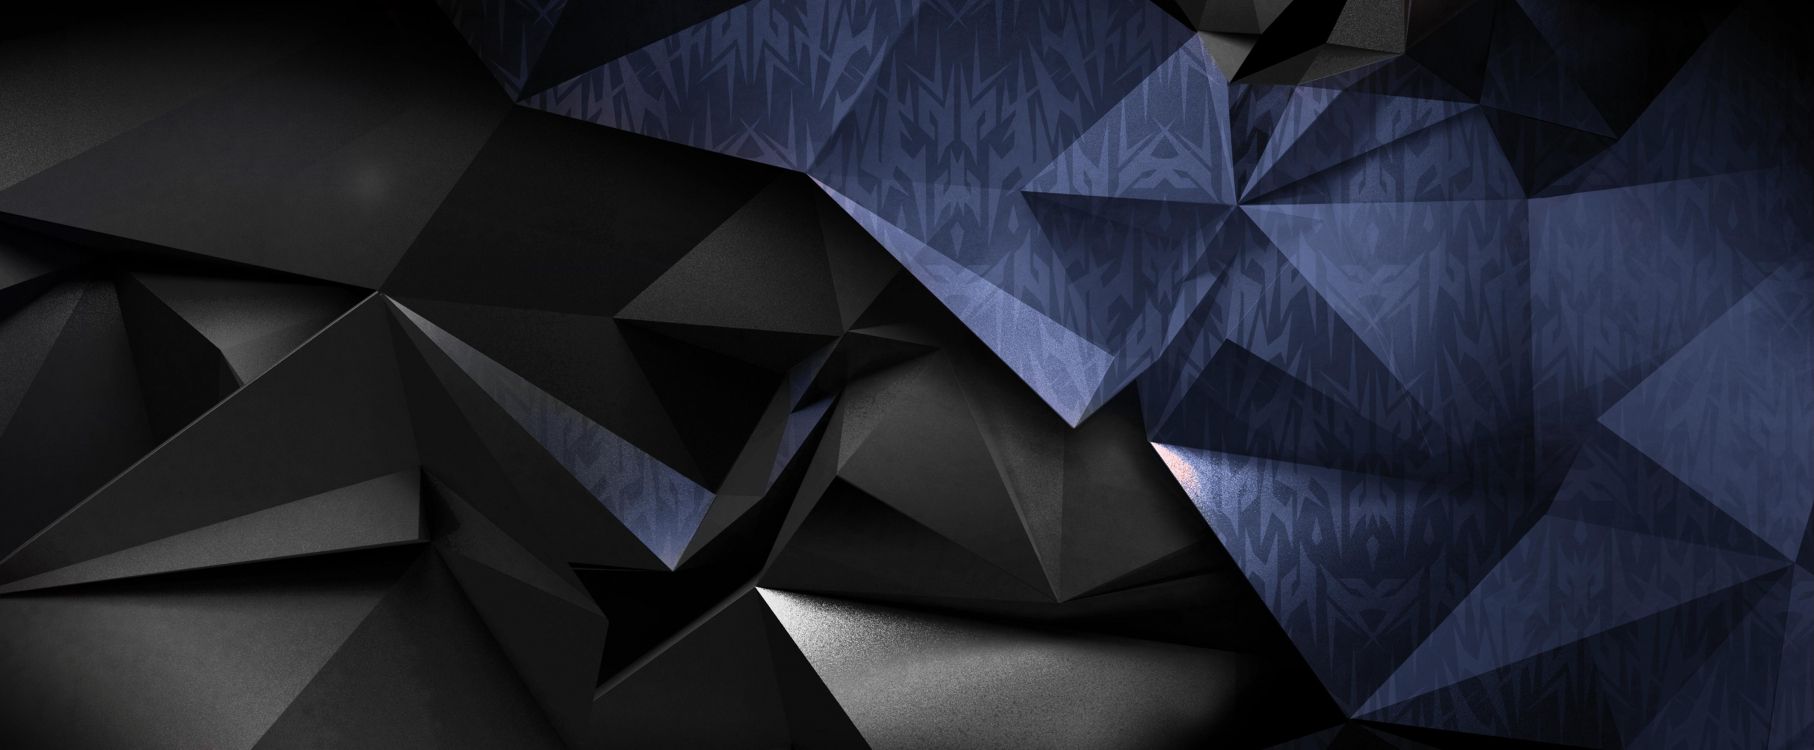 Art Abstrait Bleu et Noir. Wallpaper in 5064x2093 Resolution